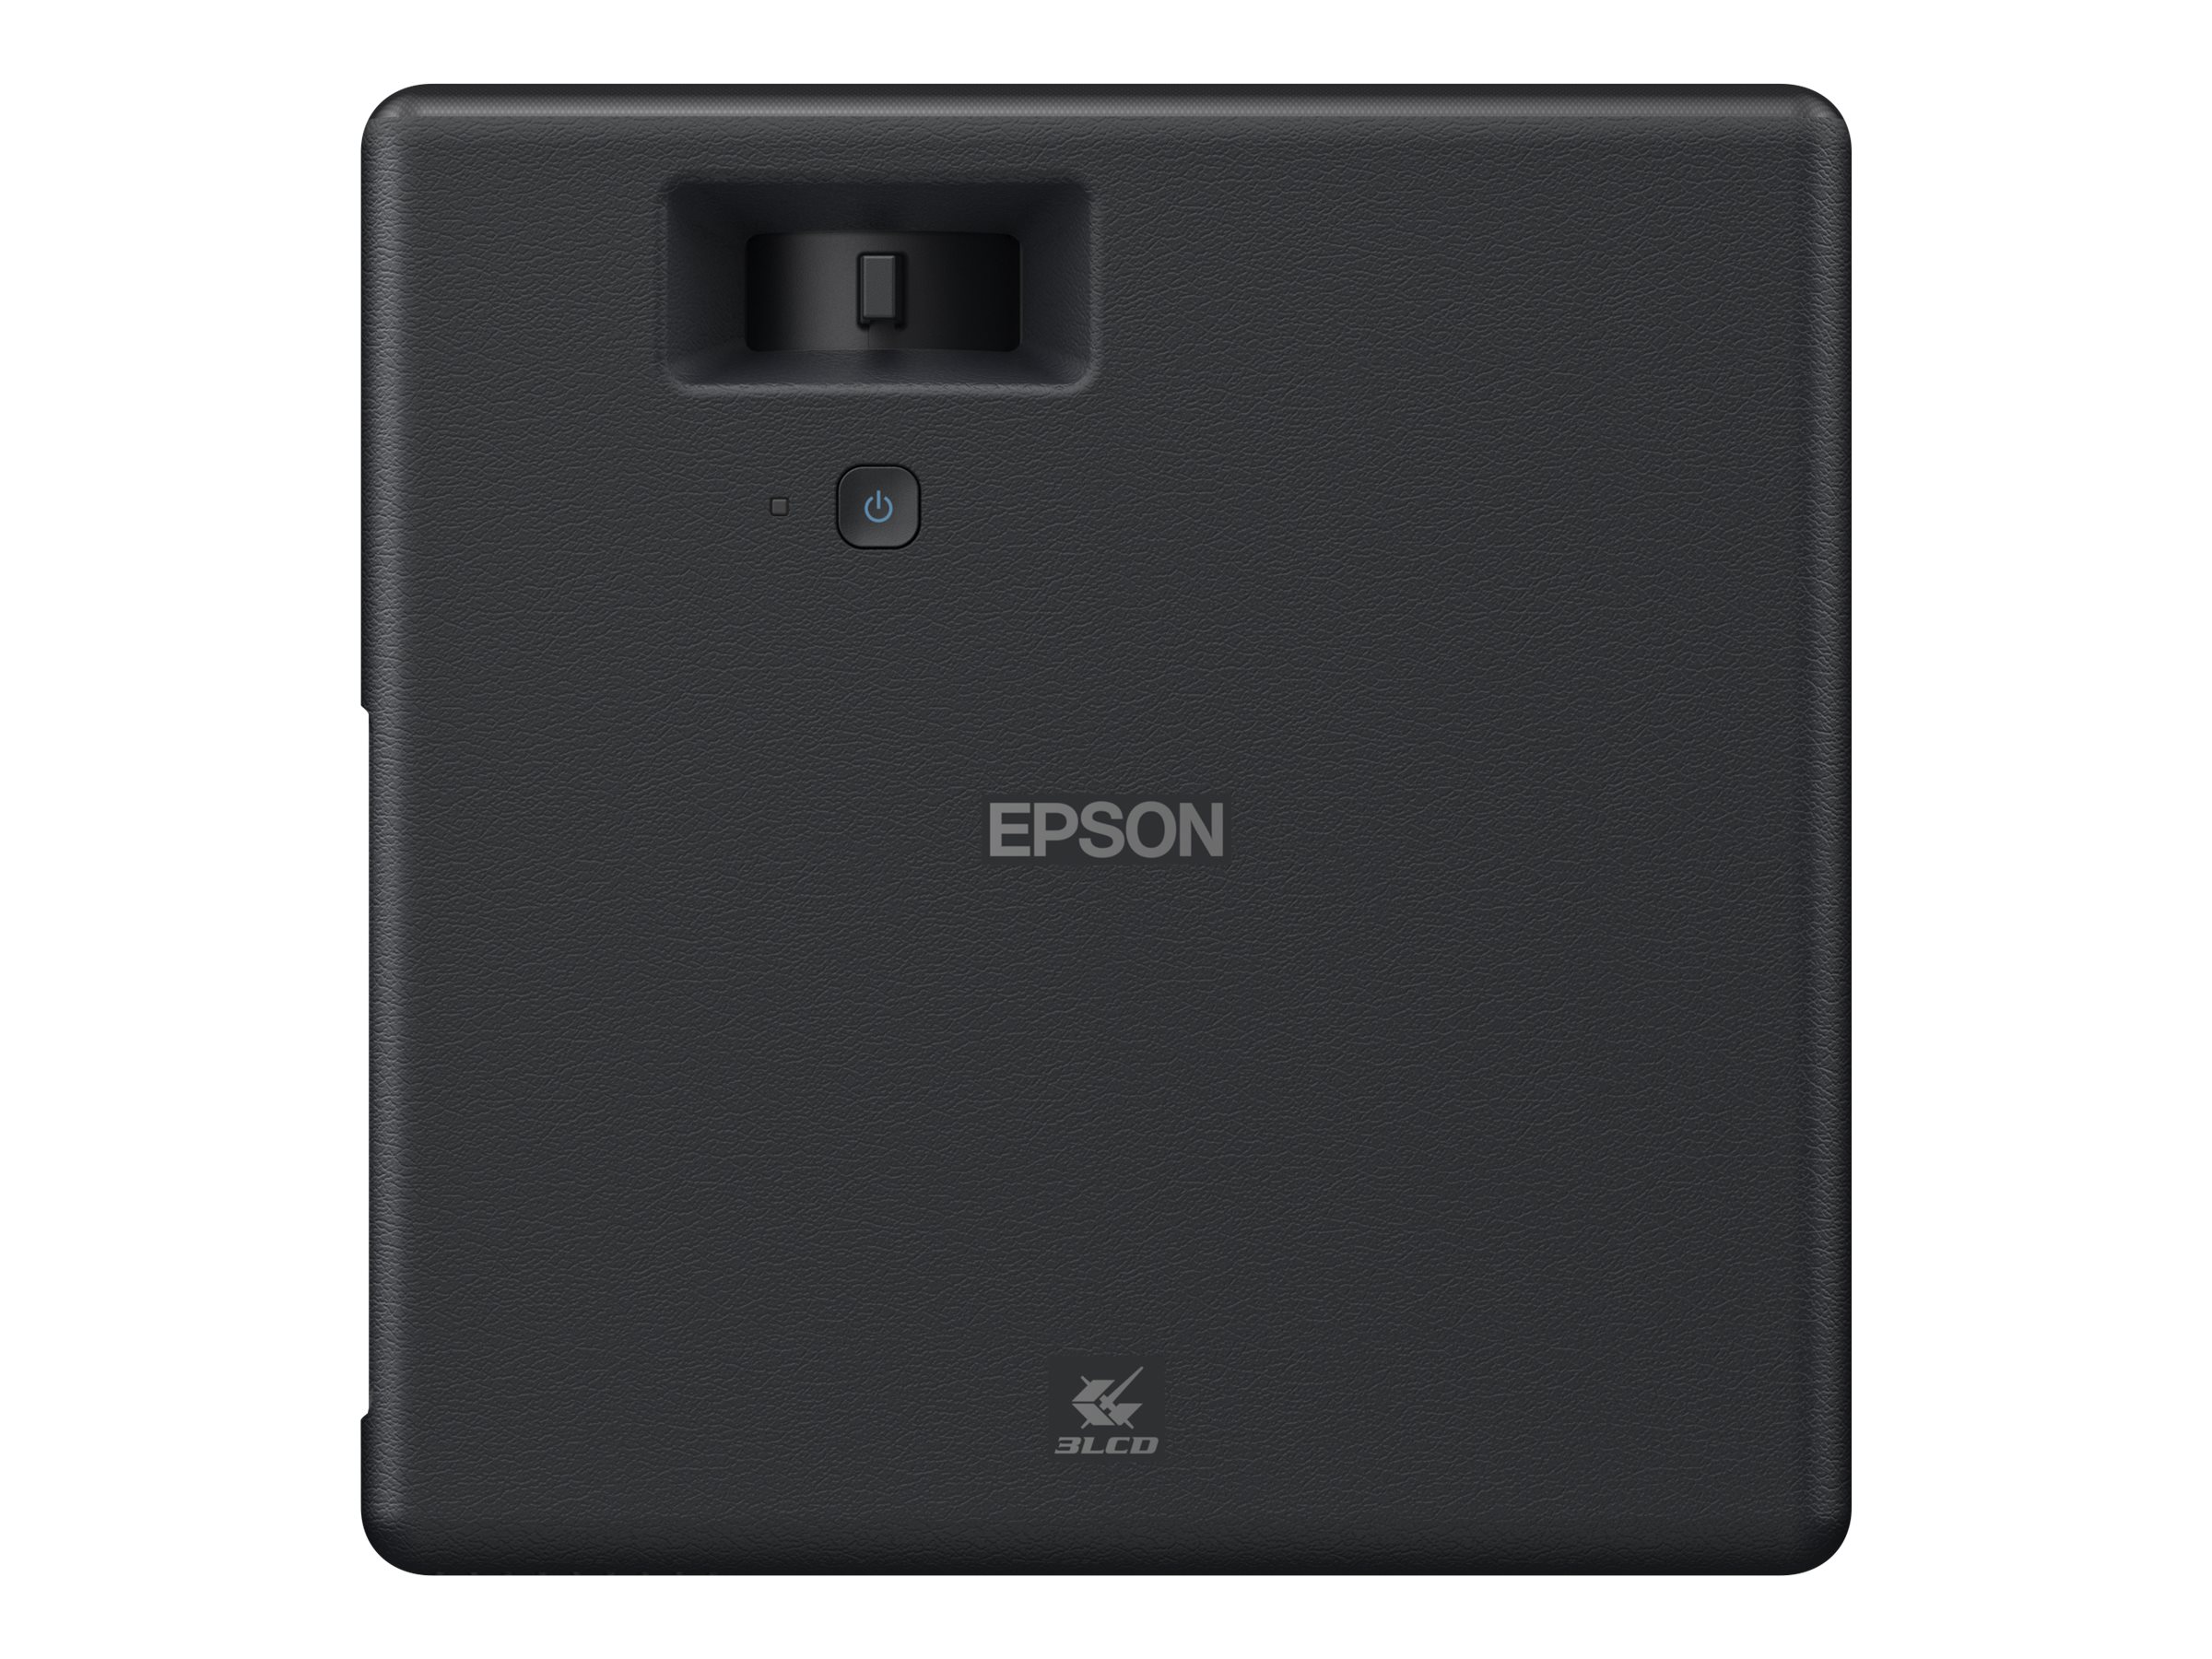 Epson EF-11 - 3-LCD-Projektor - tragbar - 1000 lm (weiß)